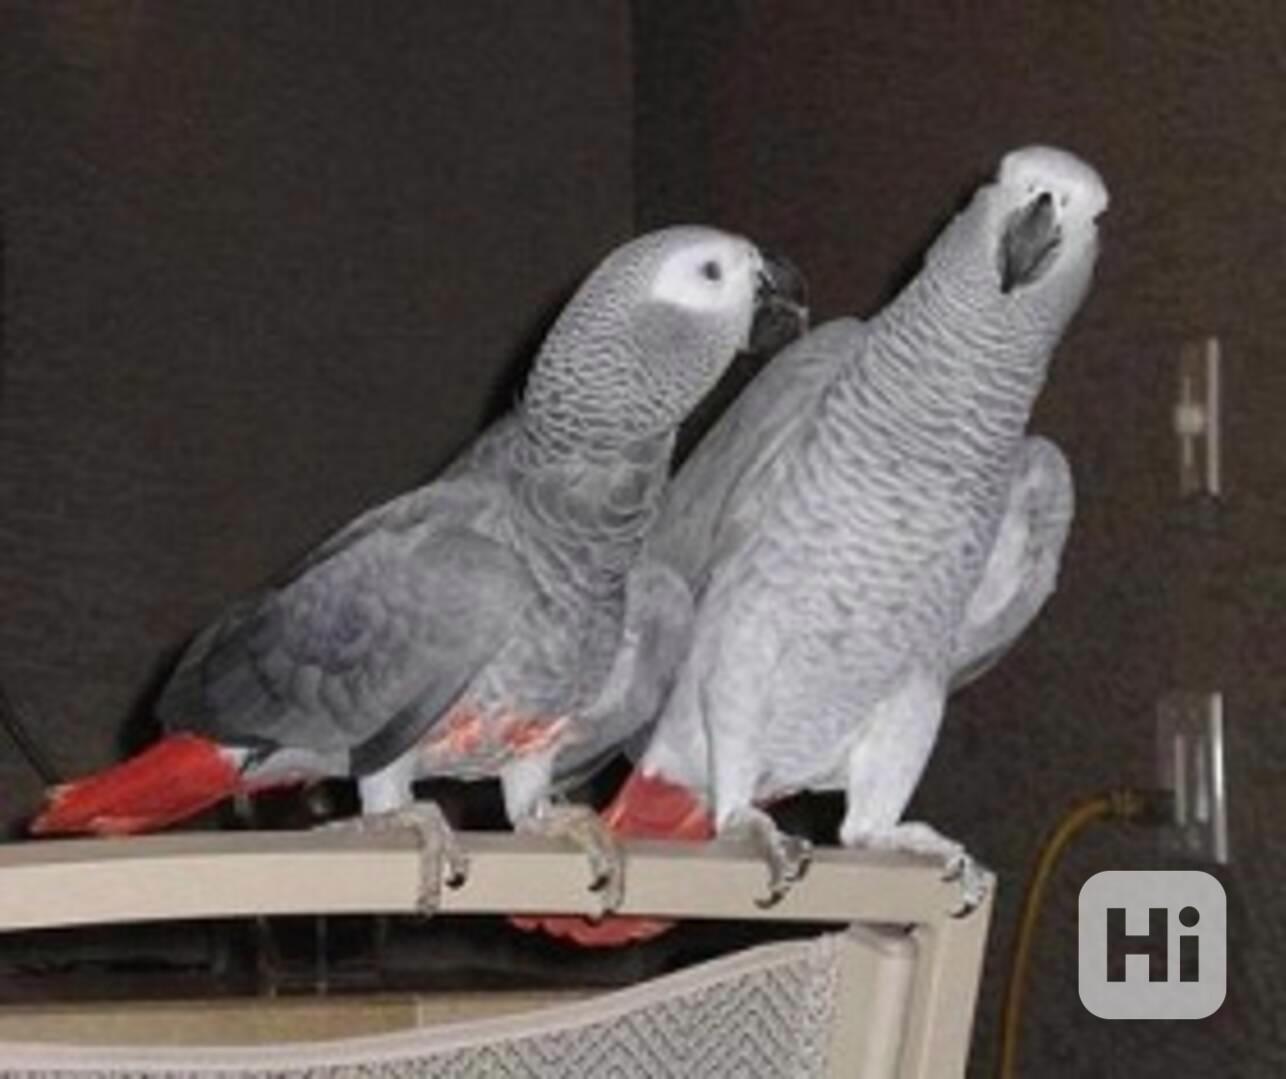 šedé africké papoušky na prodej 6000kc - foto 1